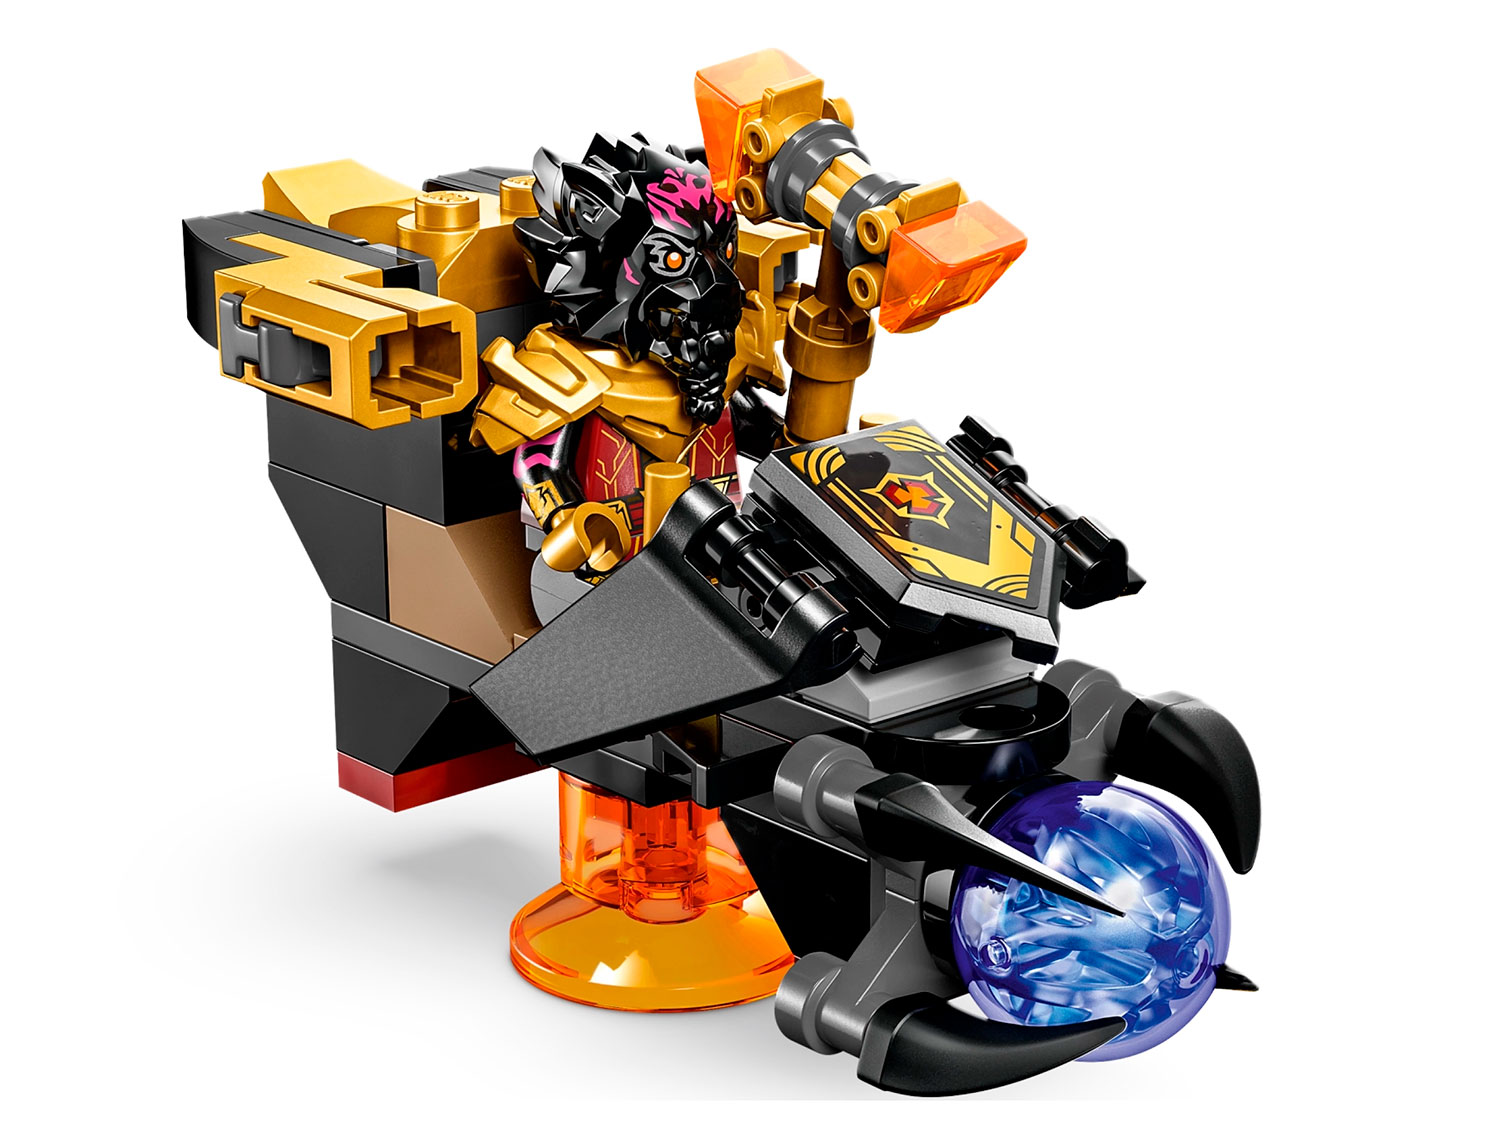 71793 LEGO Ninjago - Лавовый дракон-трансформер